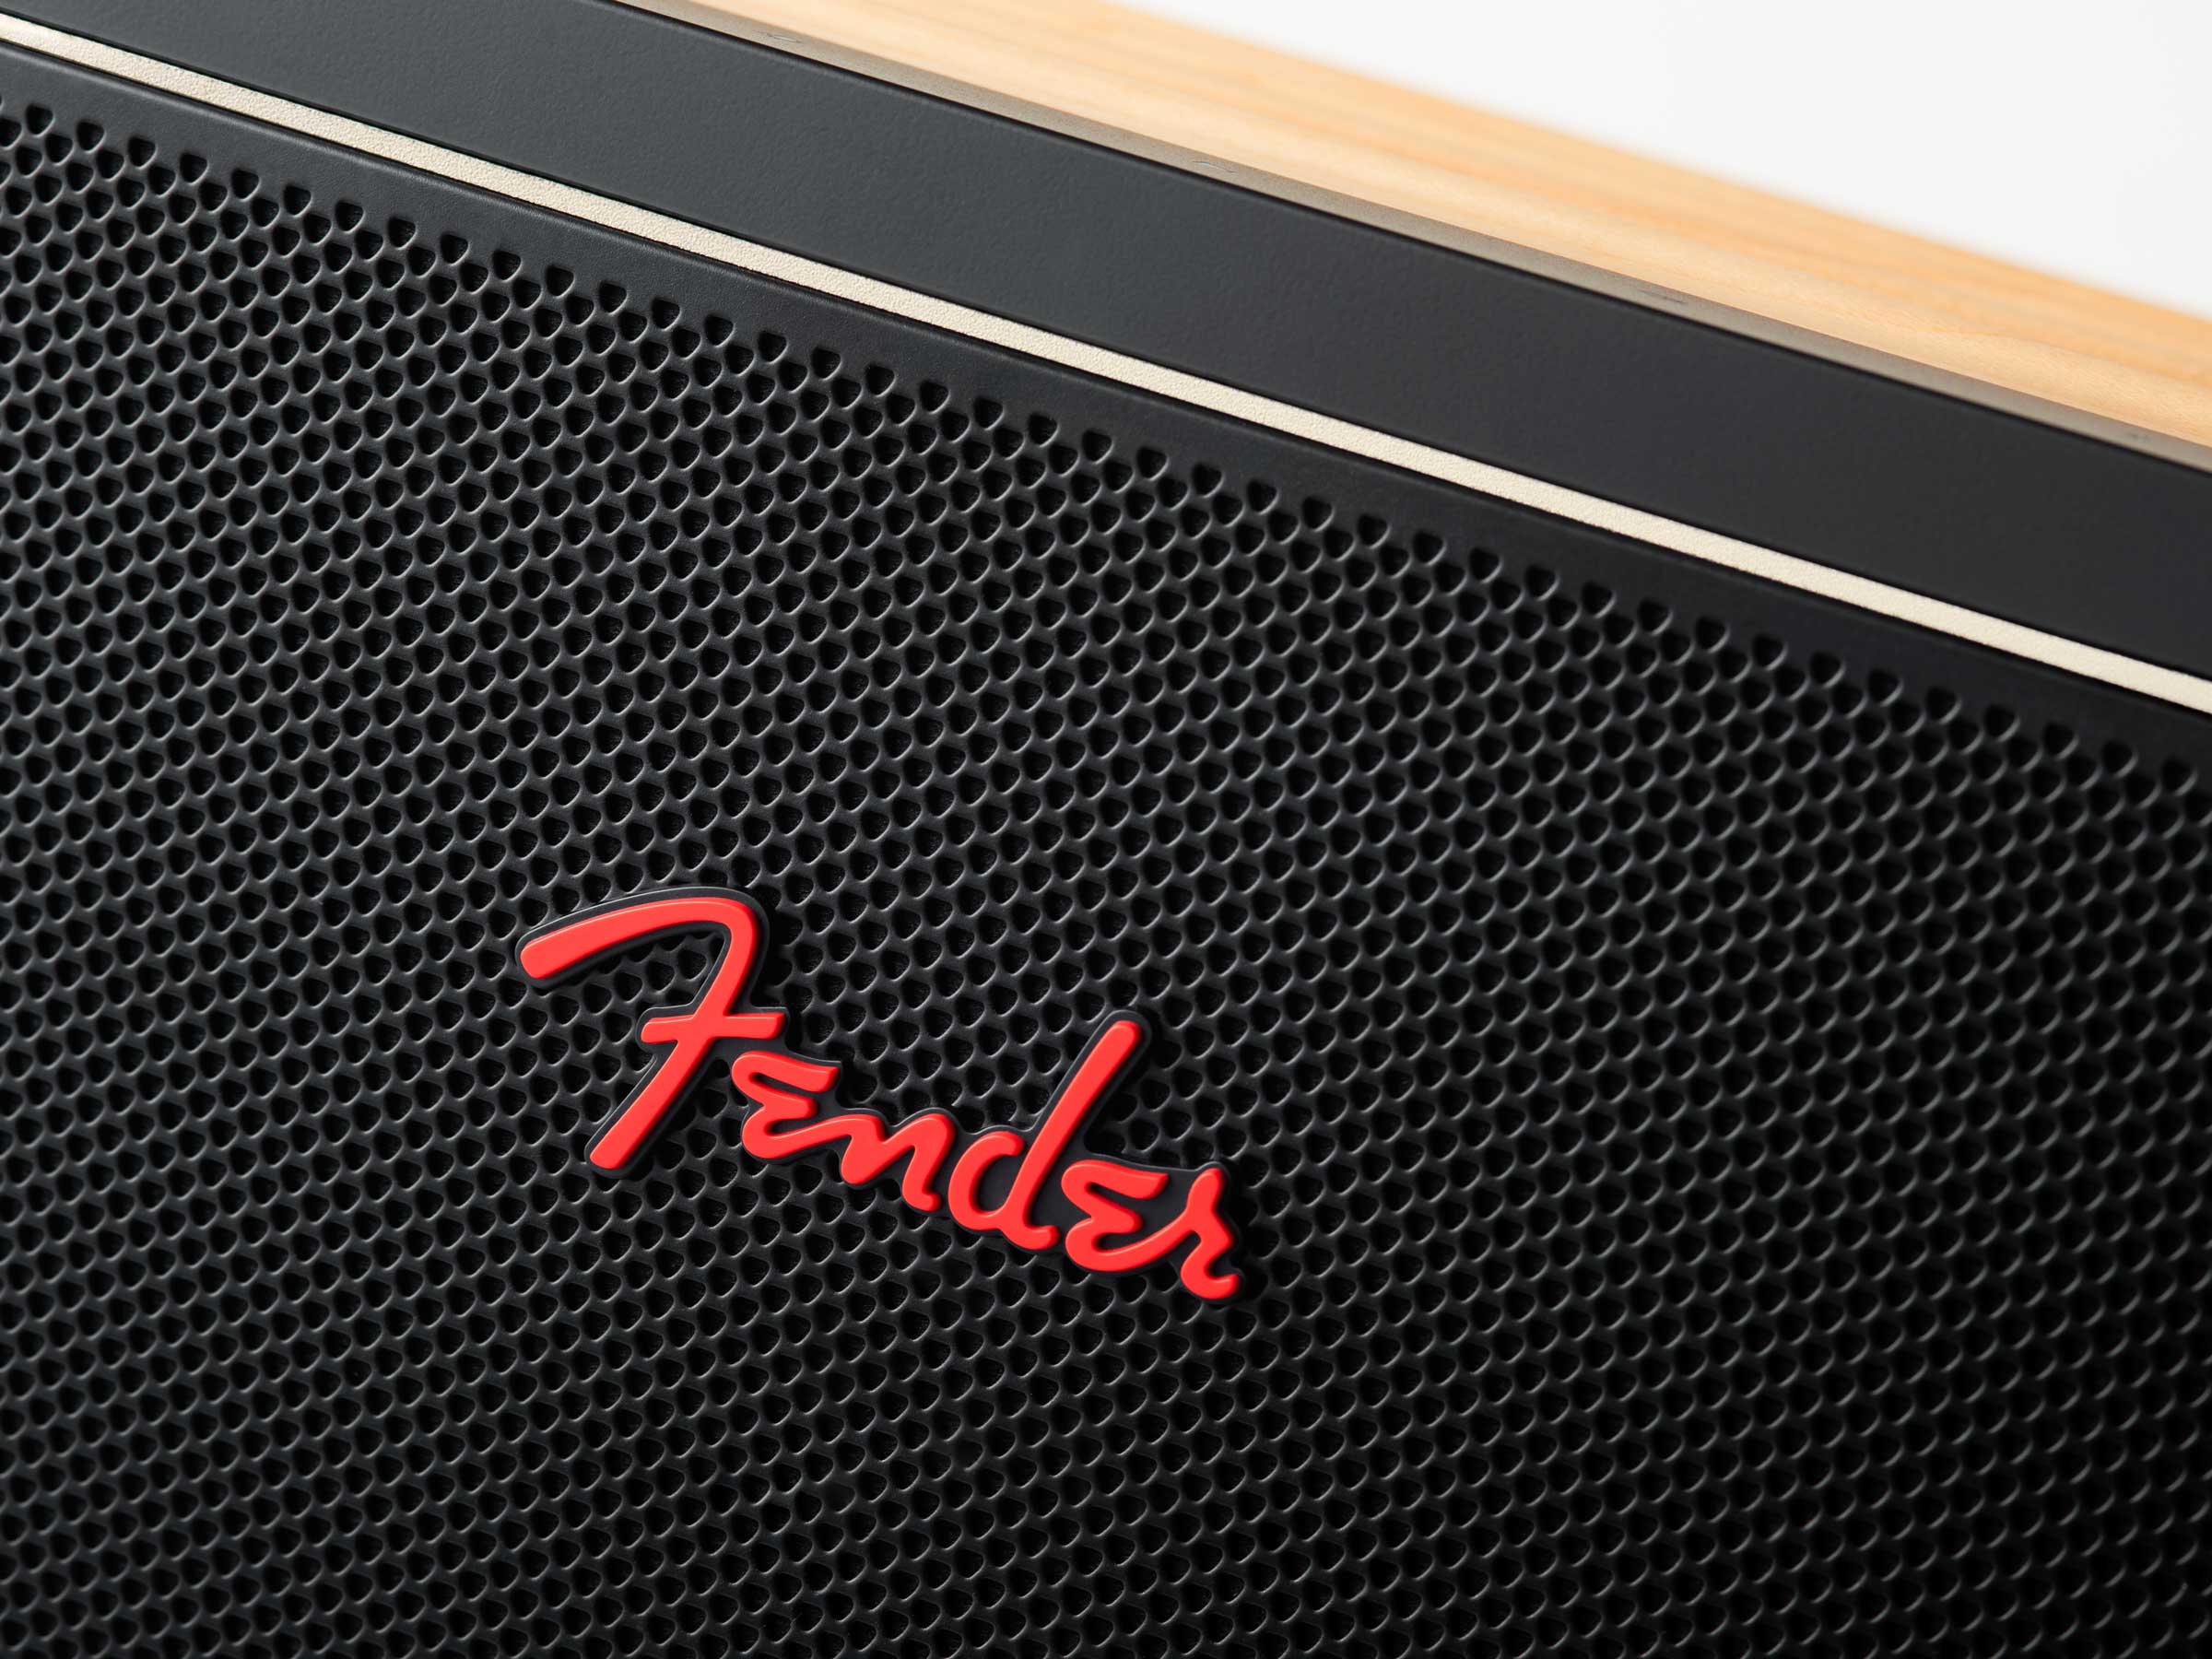 Fender RIFF Designed by Ponti Design Studio